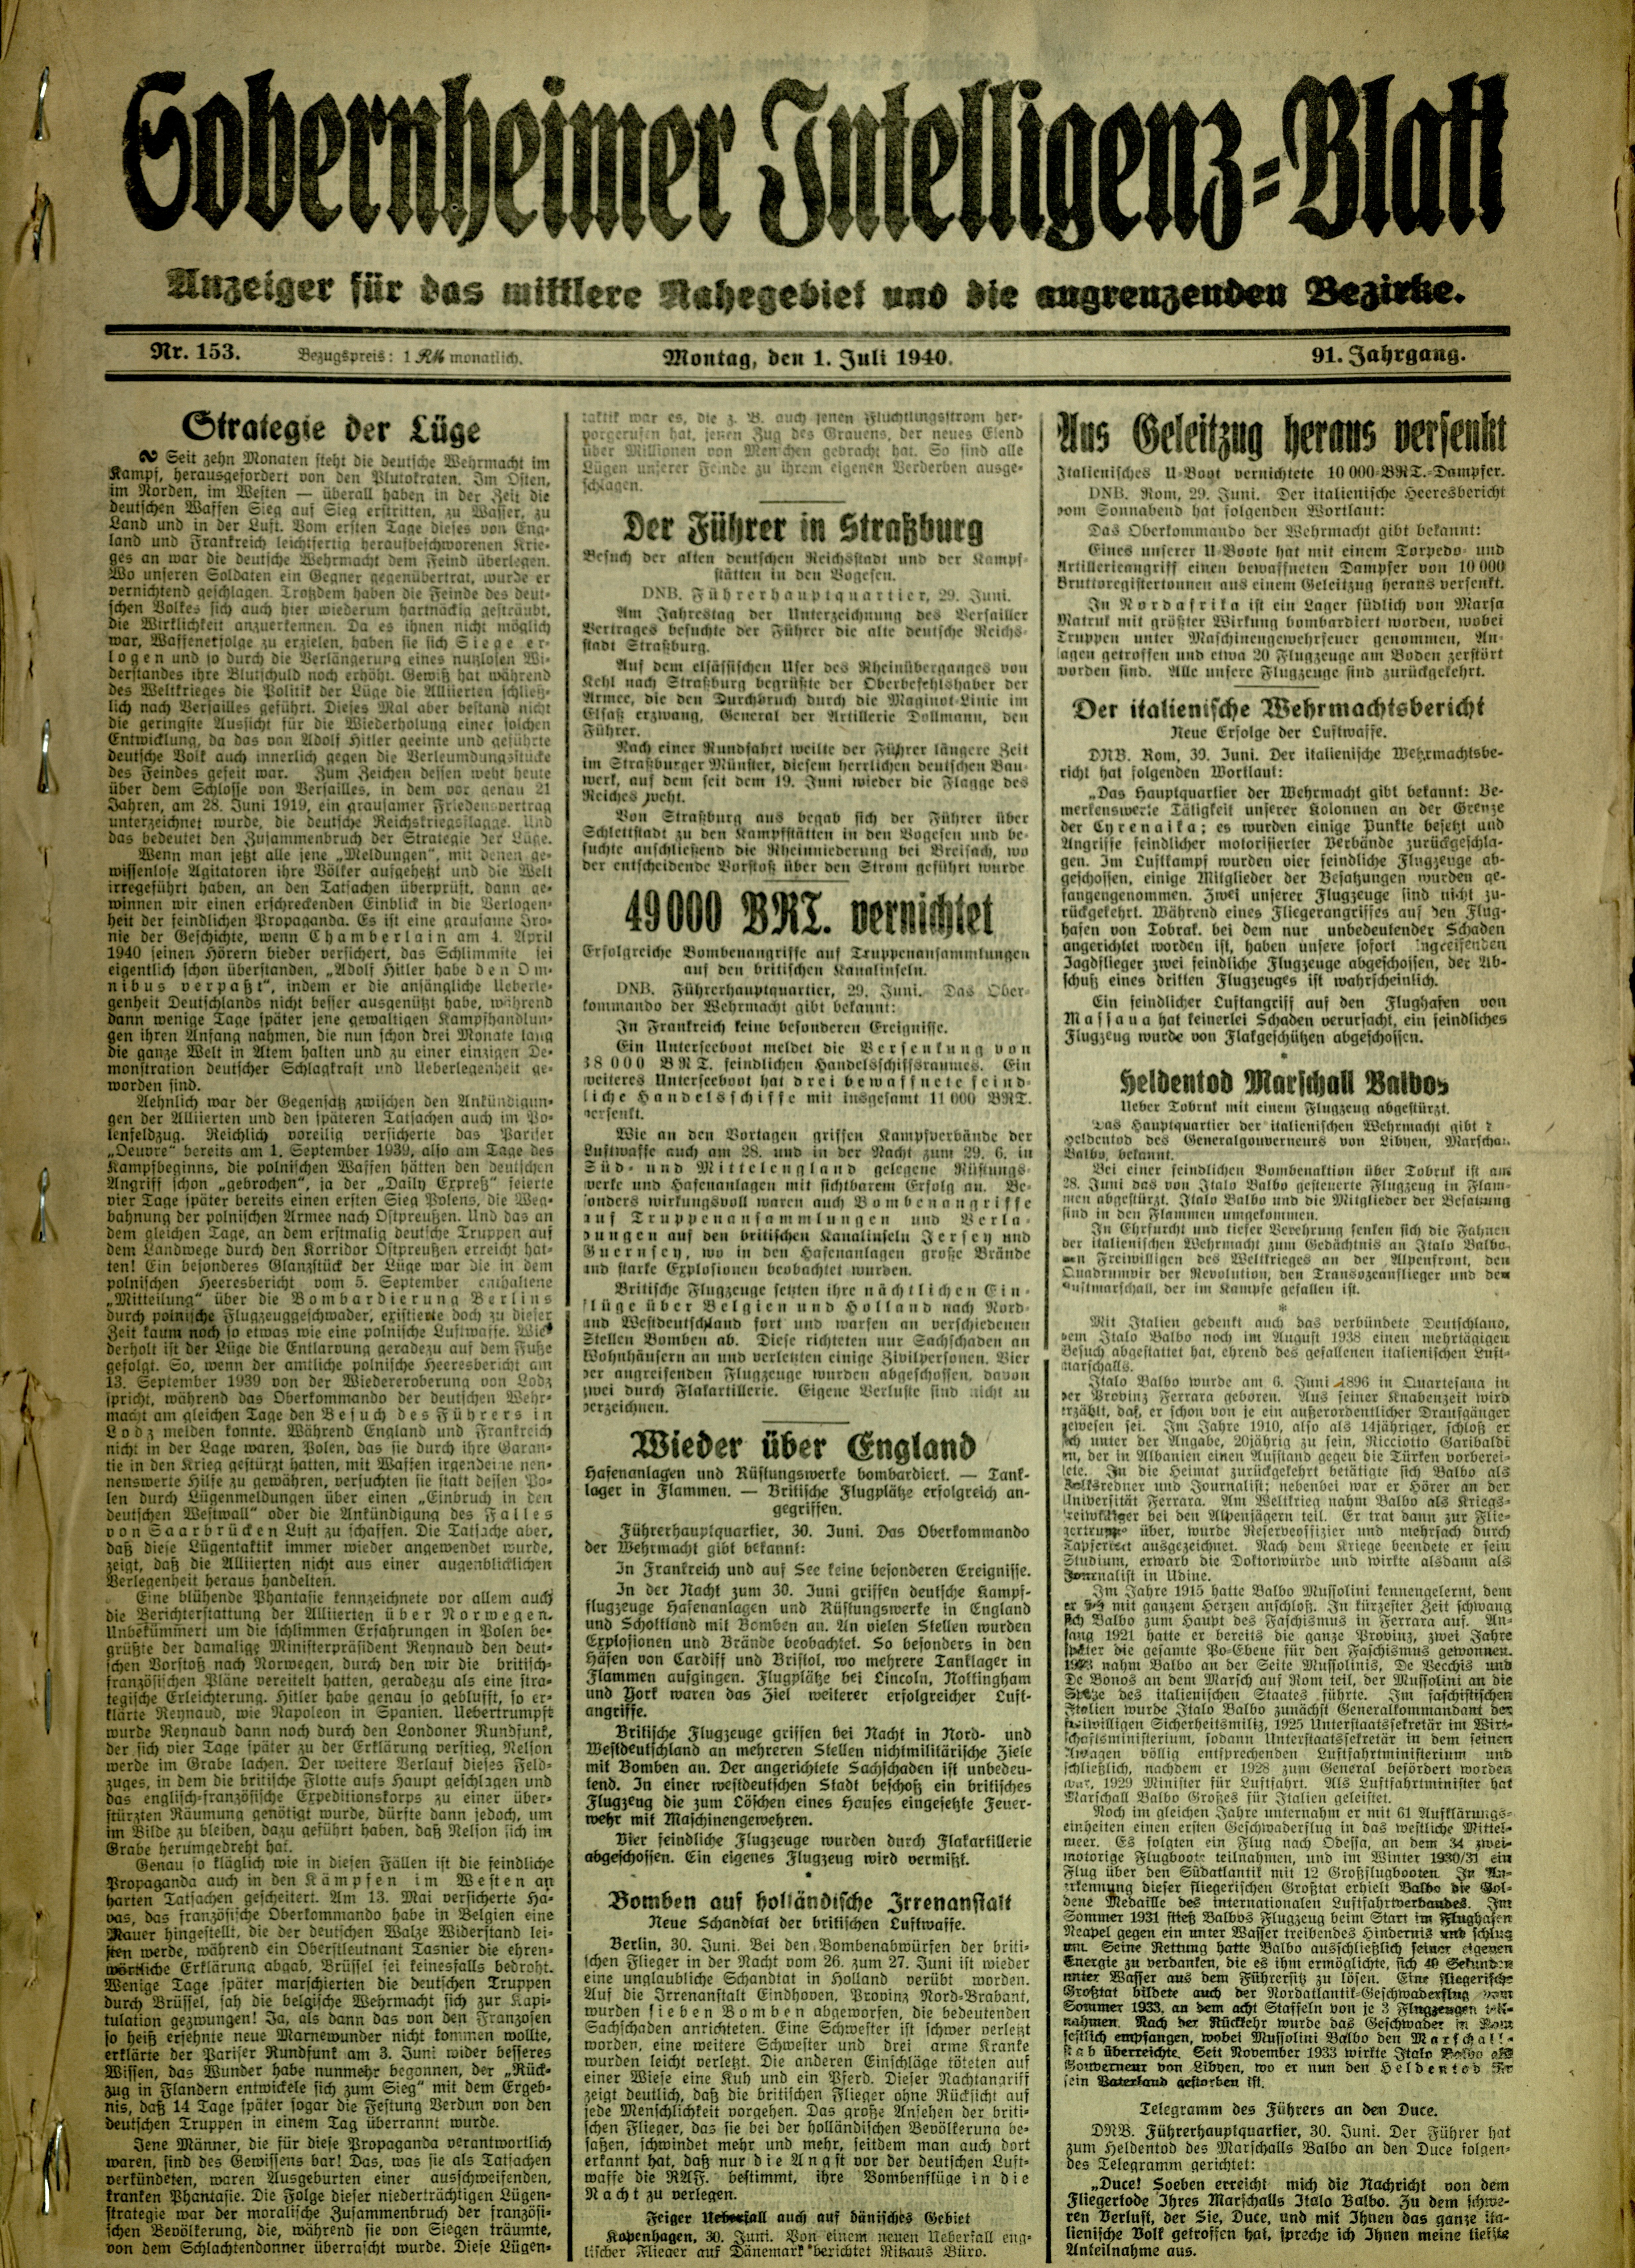 Zeitung: Sobernheimer Intelligenzblatt; Juli 1940, Jg. 91 Nr. 153 (Heimatmuseum Bad Sobernheim CC BY-NC-SA)